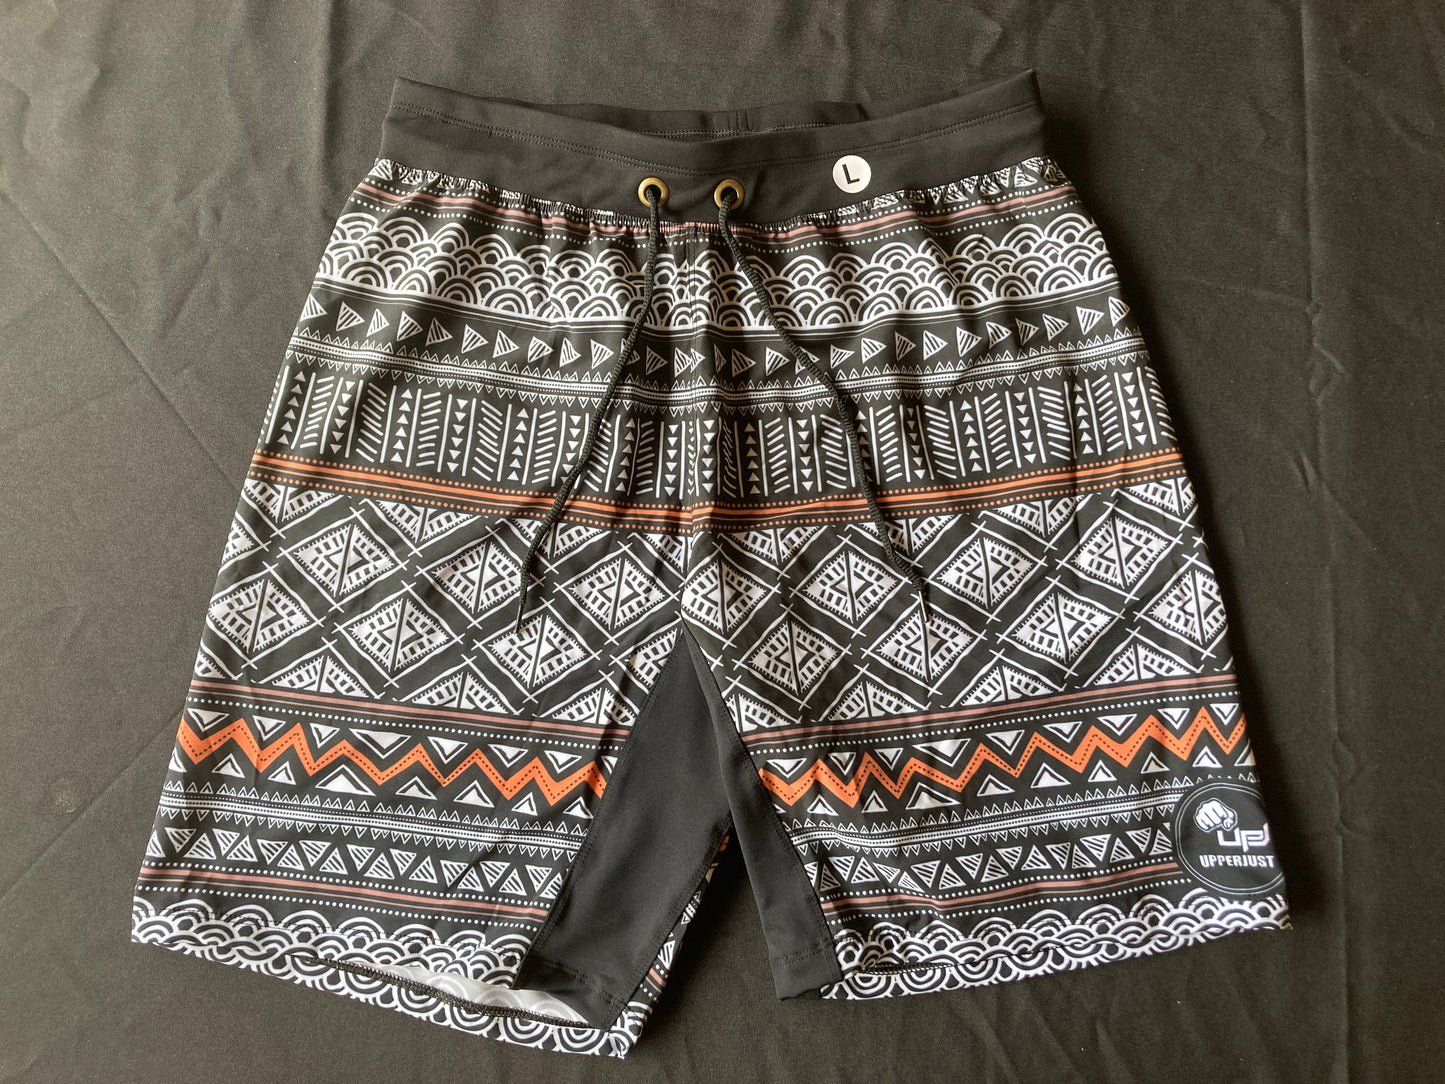 Aztec Men's Shorts